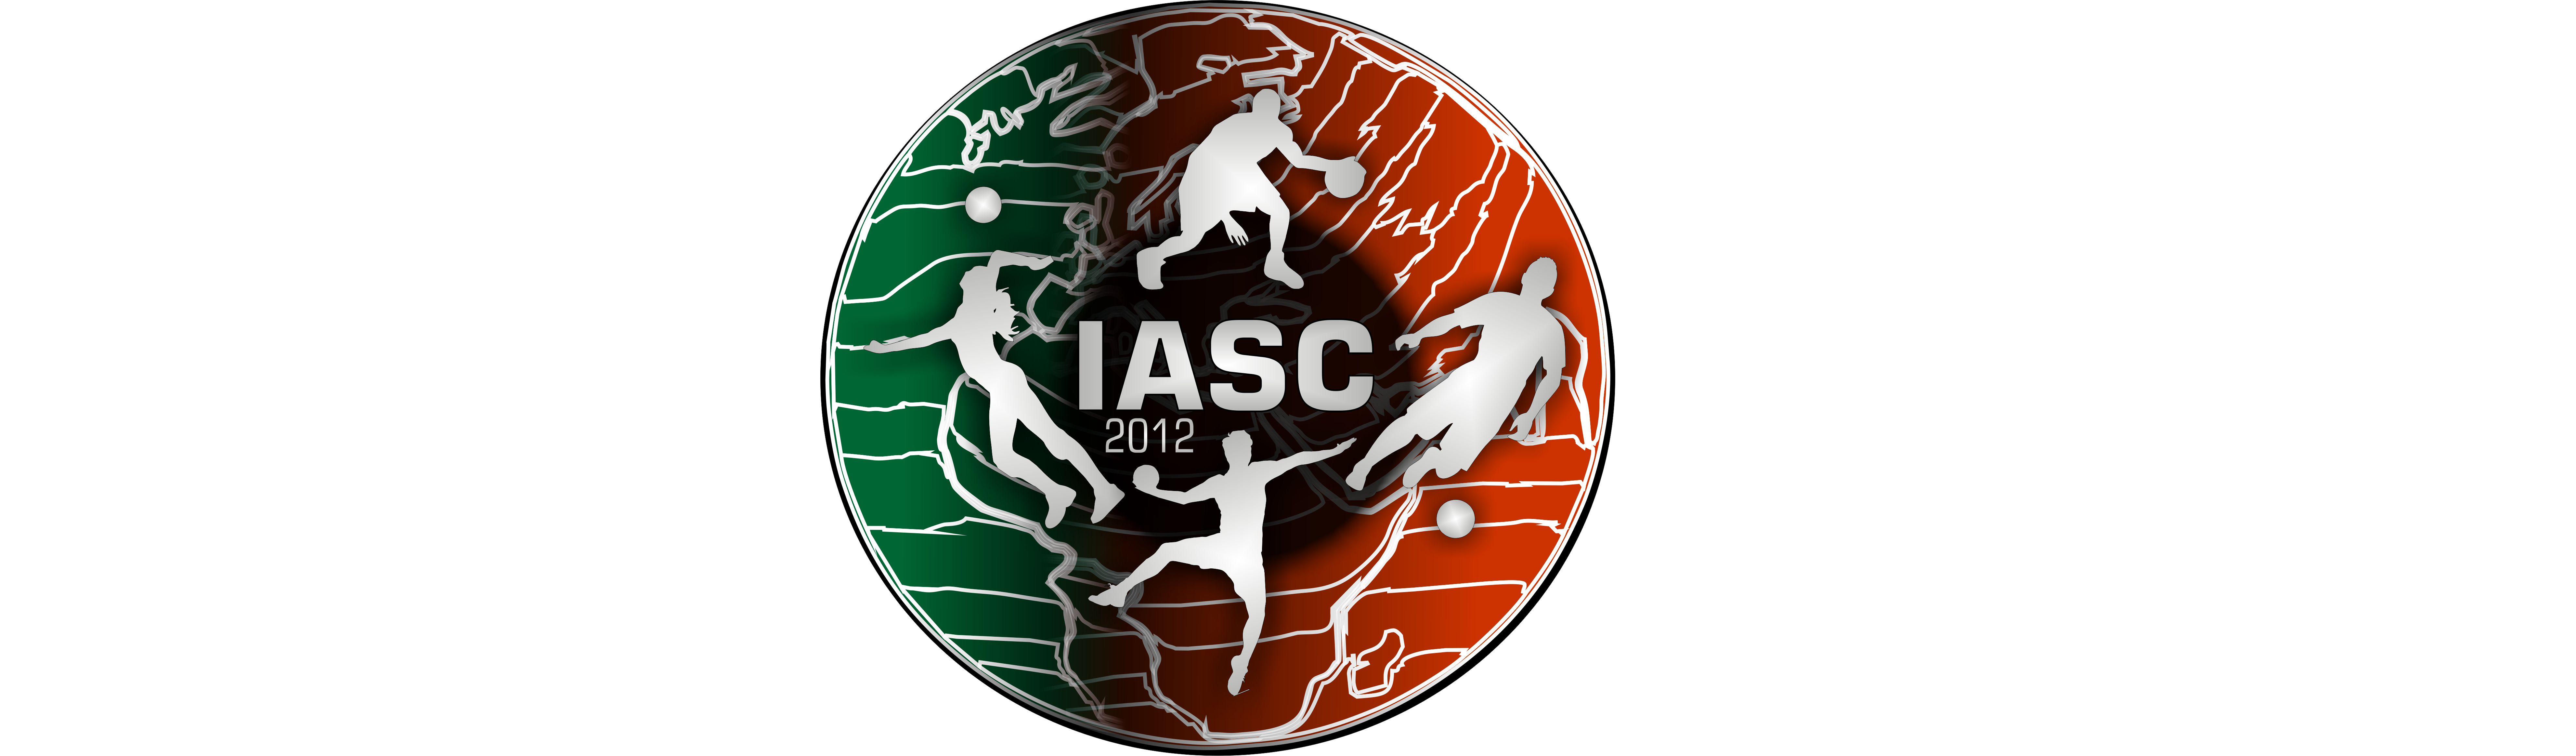 IASC Shop - Stowarzyszenie Inter Active Sport Club